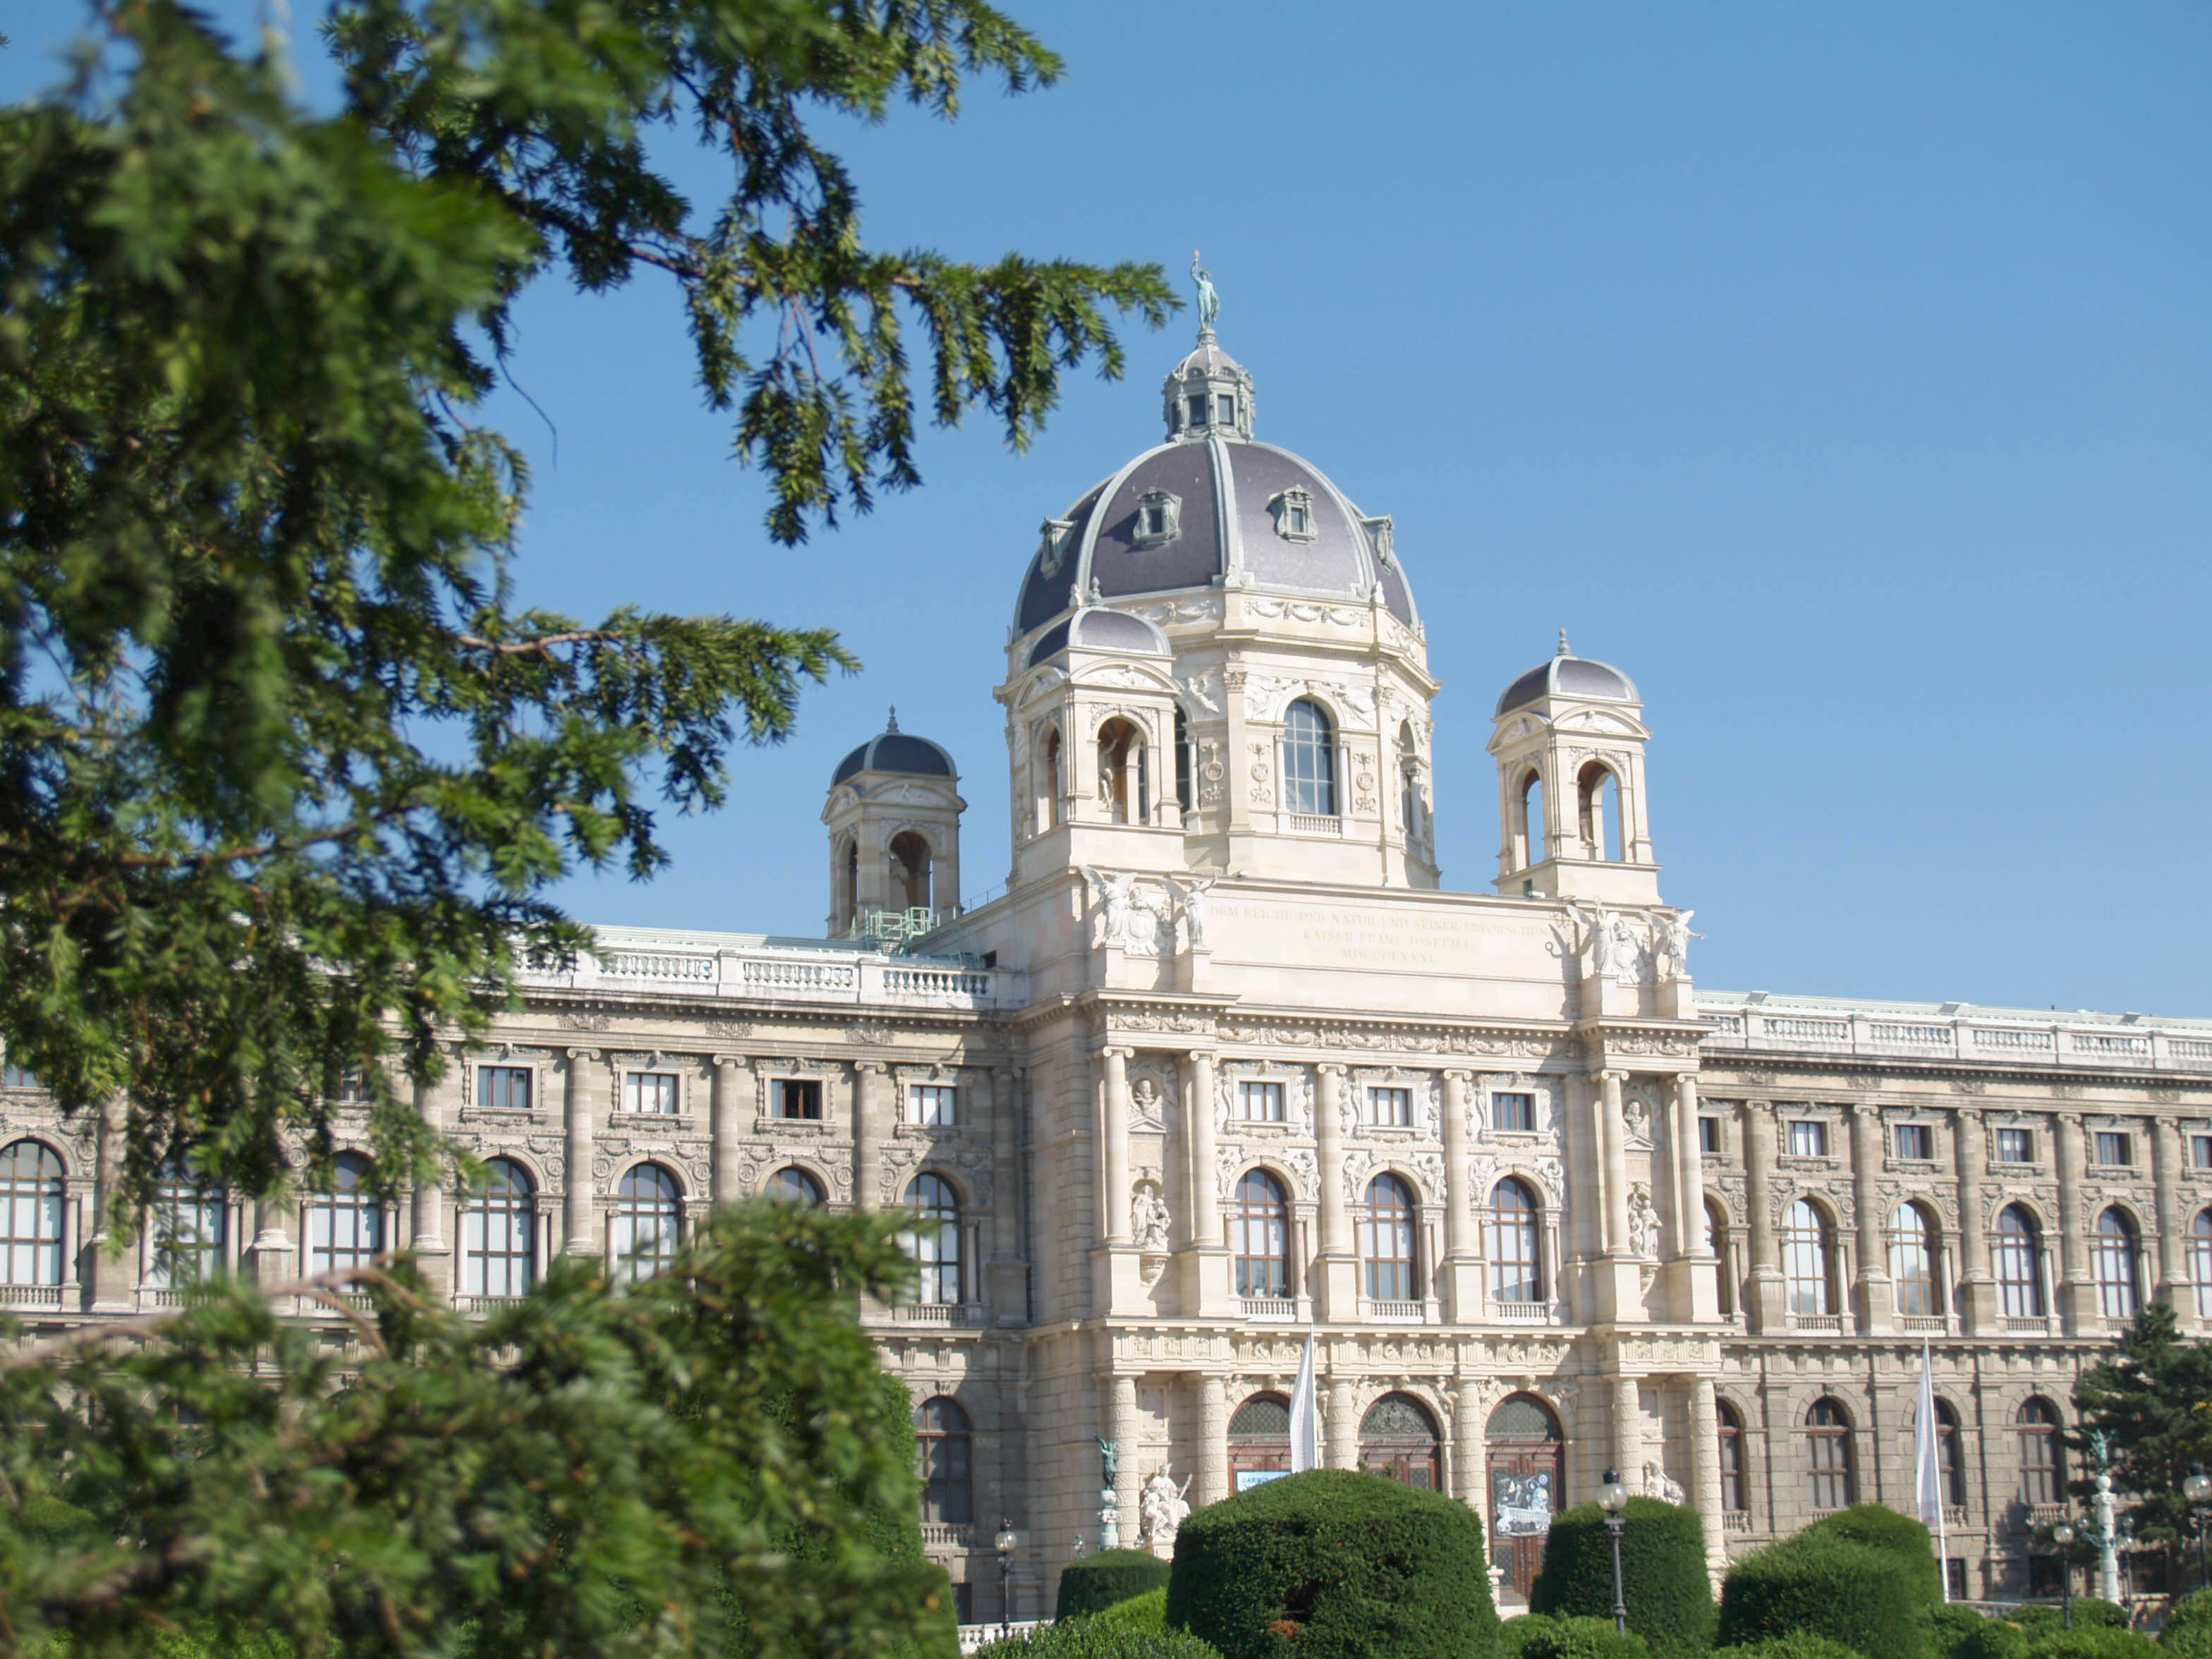 Blick durch den Vorgarten auf das naturhistorische Museum Wien bei hellblauem Himmel.